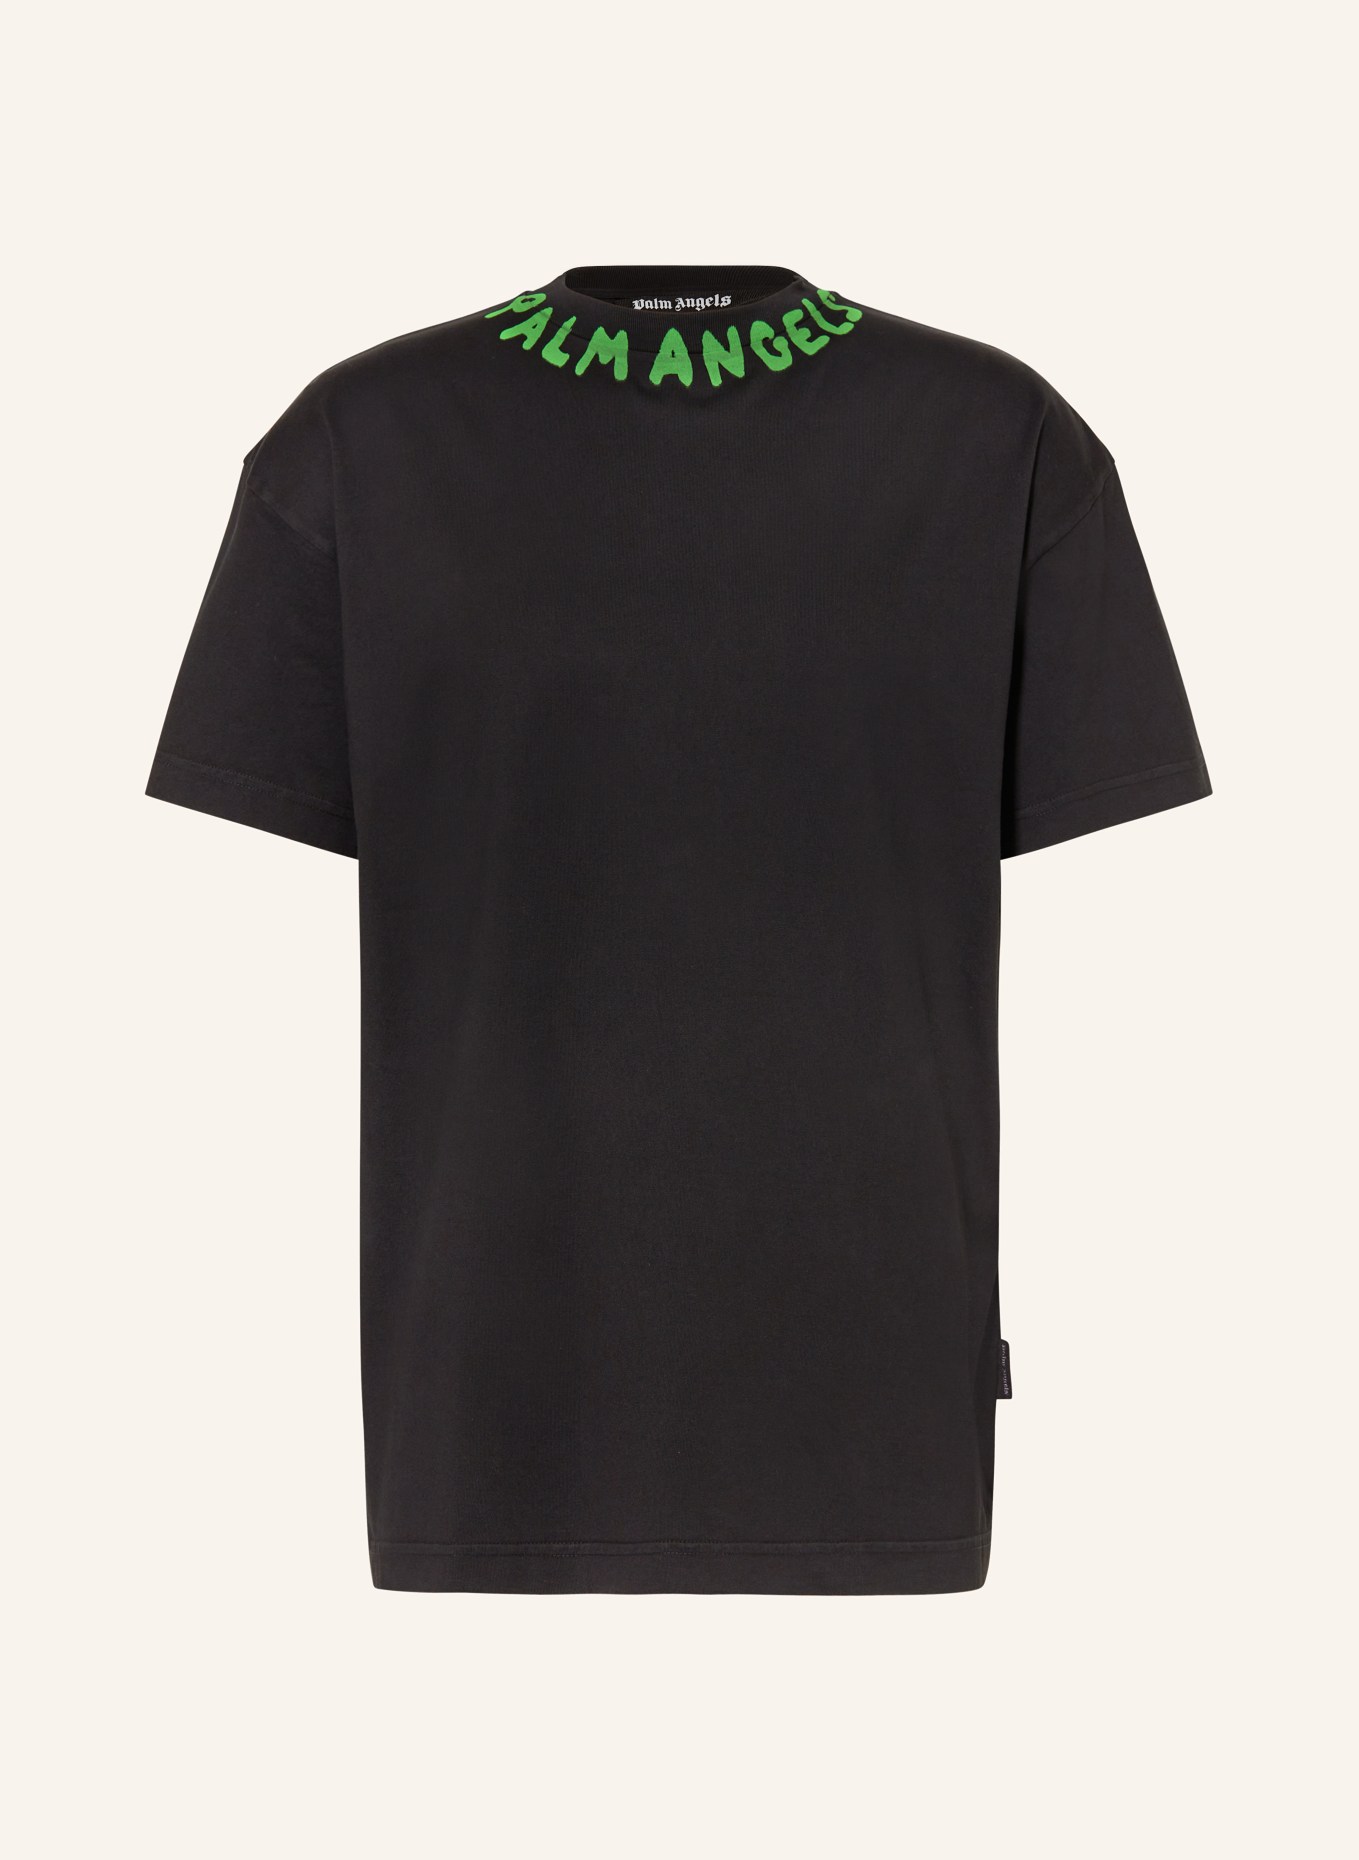 Palm Angels T-Shirt, Farbe: SCHWARZ (Bild 1)